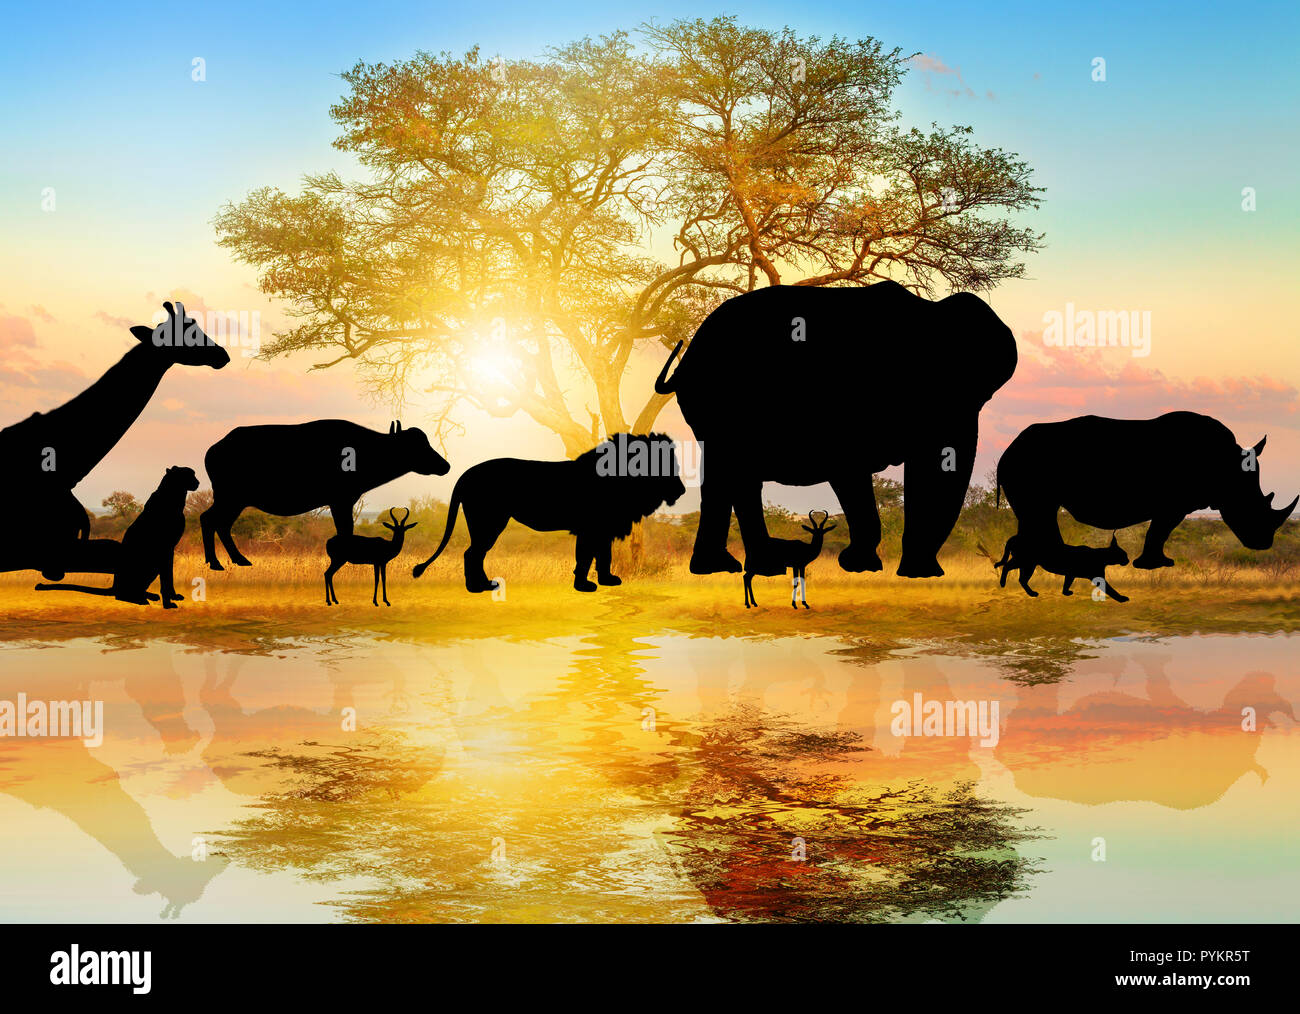 Silhouette di animali selvatici rivestiti su african acacia background a sunrise luce riflessa su uno stagno. Serengeti area faunistica in Tanzania, Africa. African Safari scena savana paesaggio. Wallpaper Foto Stock